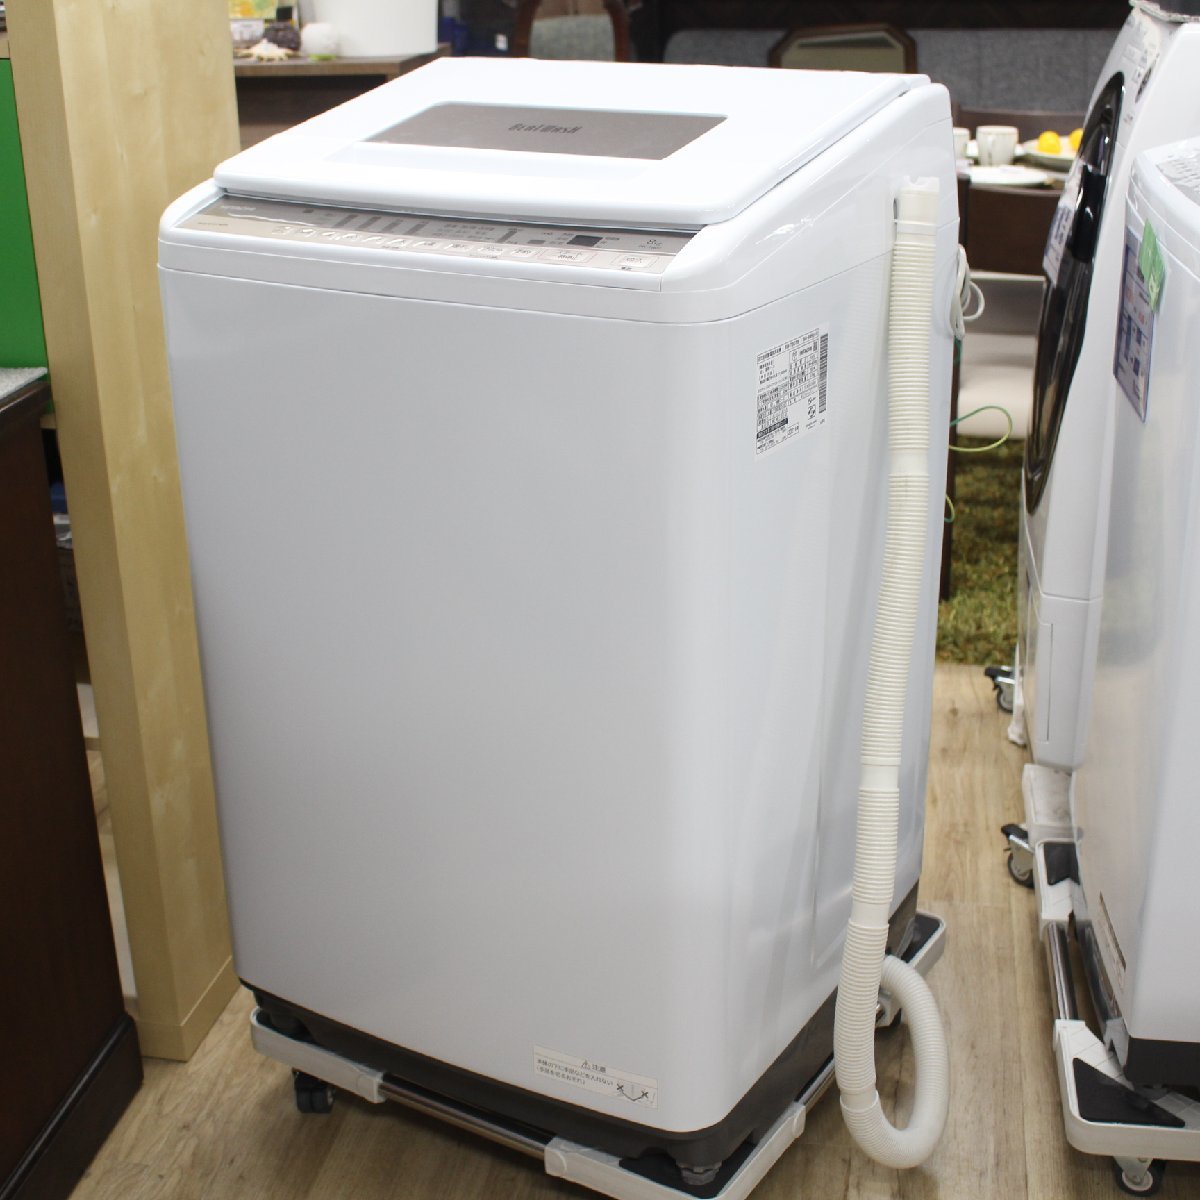 東京都三鷹市にて 日立 全自動洗濯機 BW-T807 2021年製 を出張買取させて頂きました。